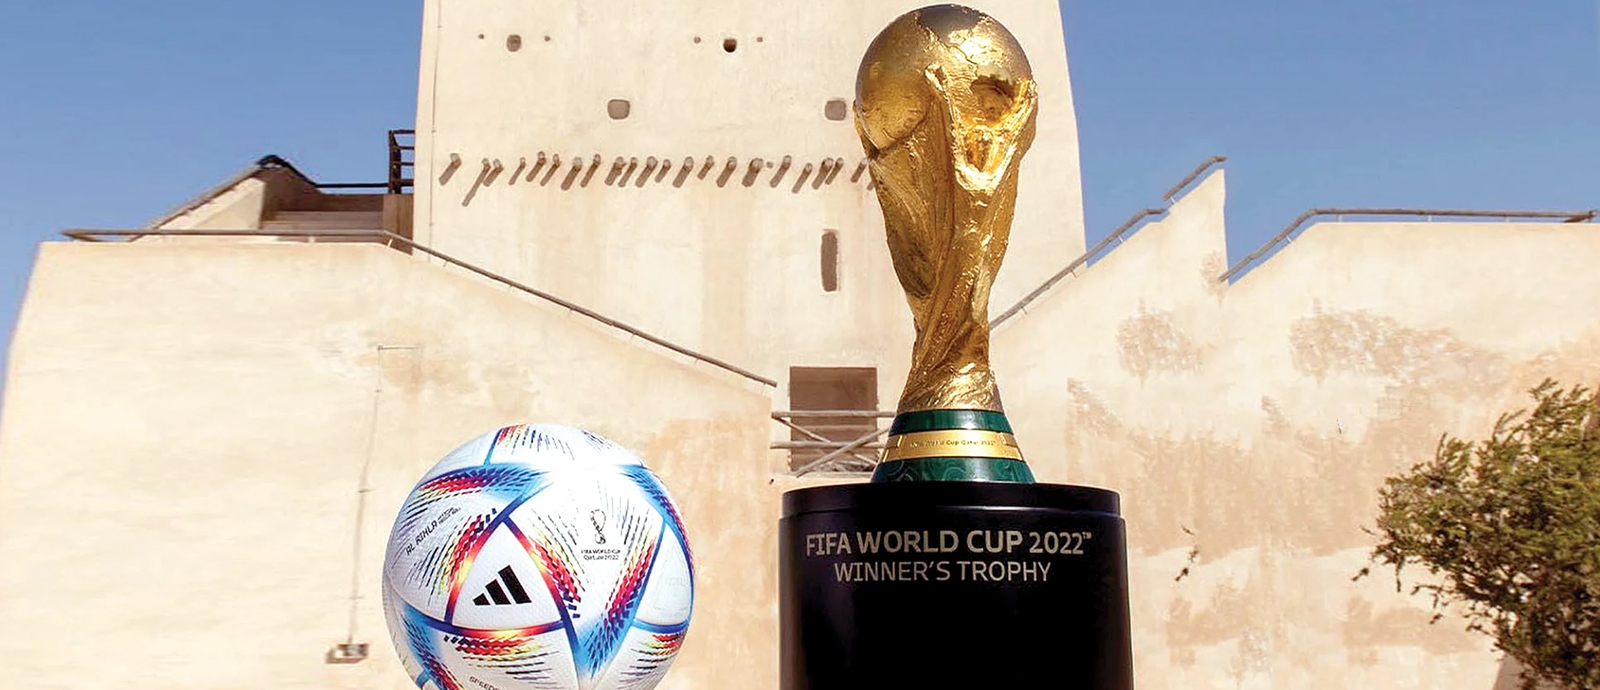 الجمعية العامة للأمم المتحدة ترحب باستضافة دولة قطر لكأس العالم 2022